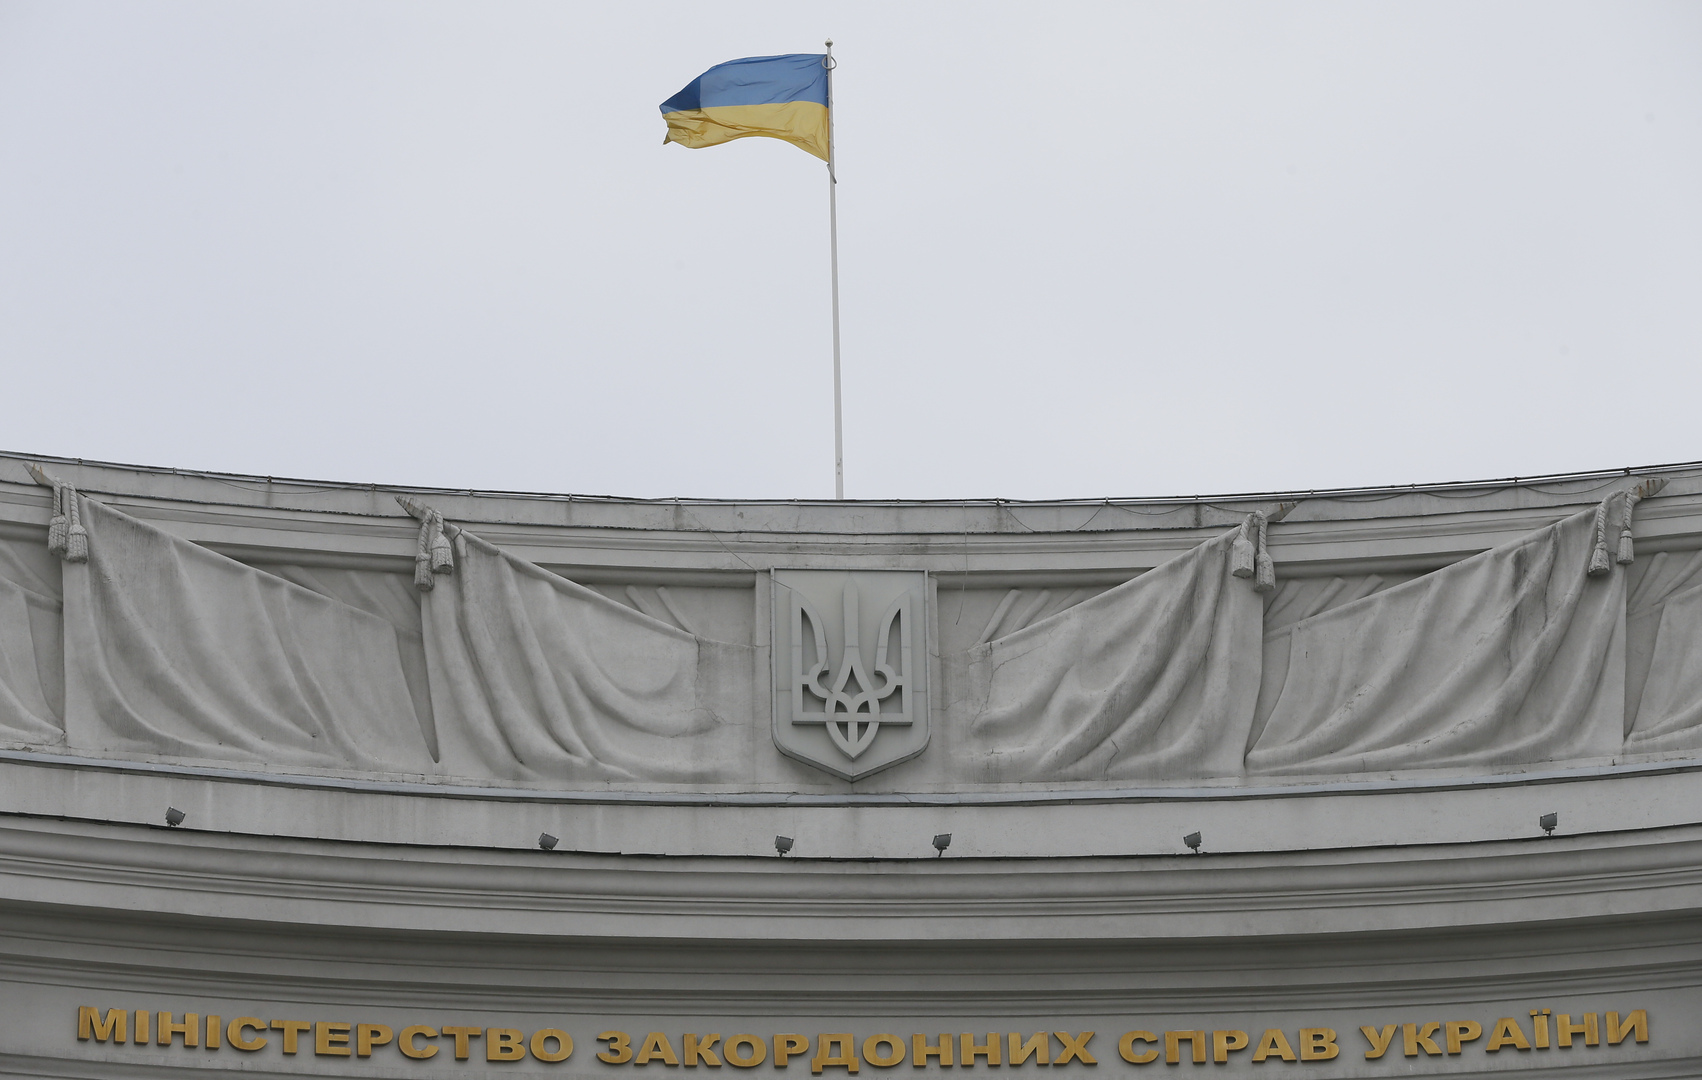 الأمم المتحدة تندد بتجاوزات حقوق الإنسان في أوكرانيا